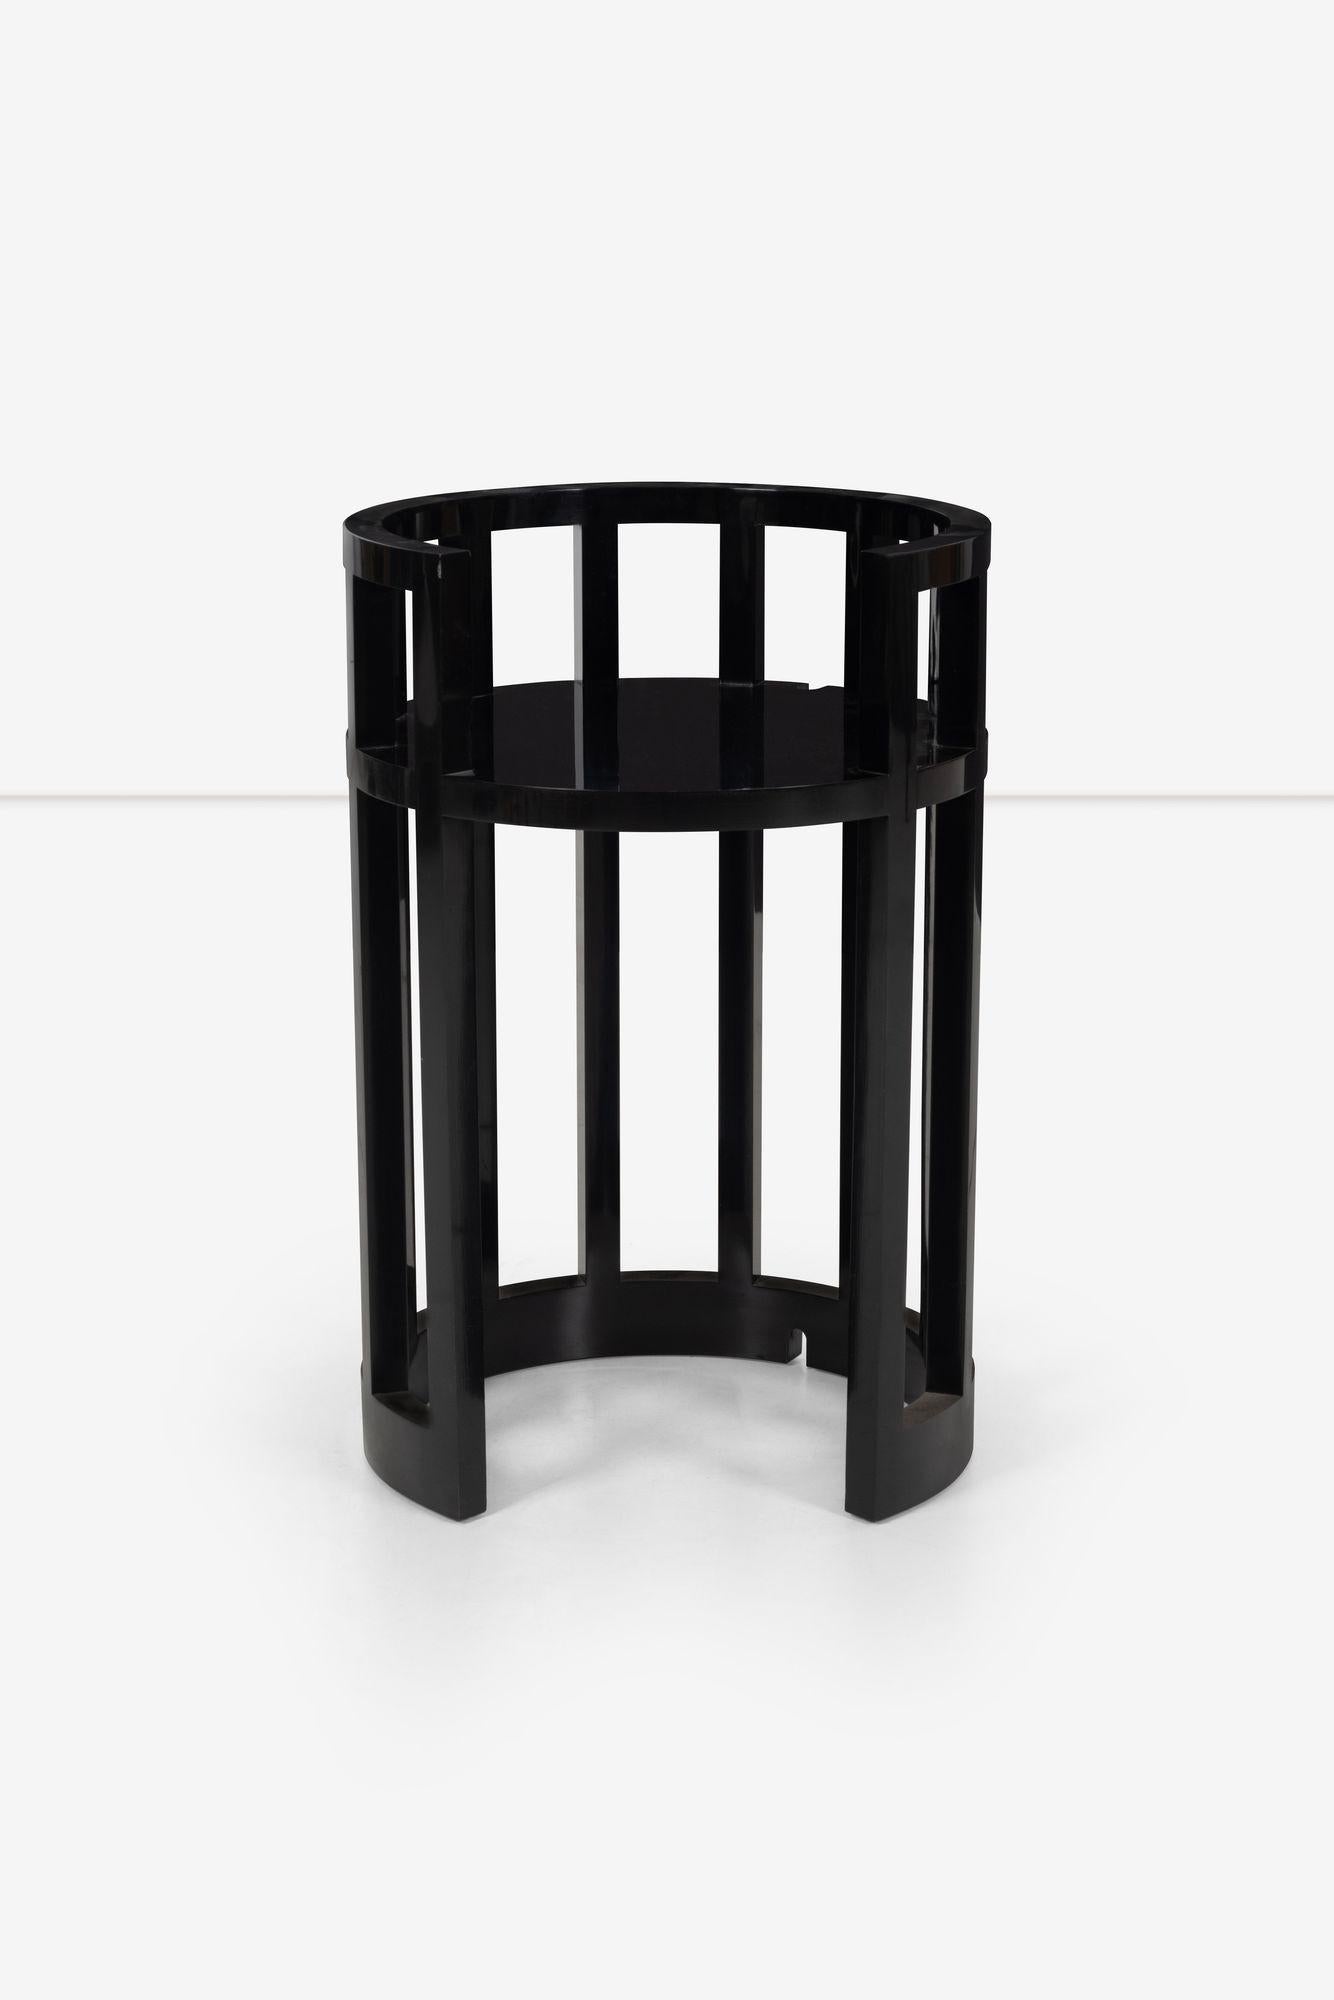 Post-Modern Richard Meier Custom Lamp Table For Sale